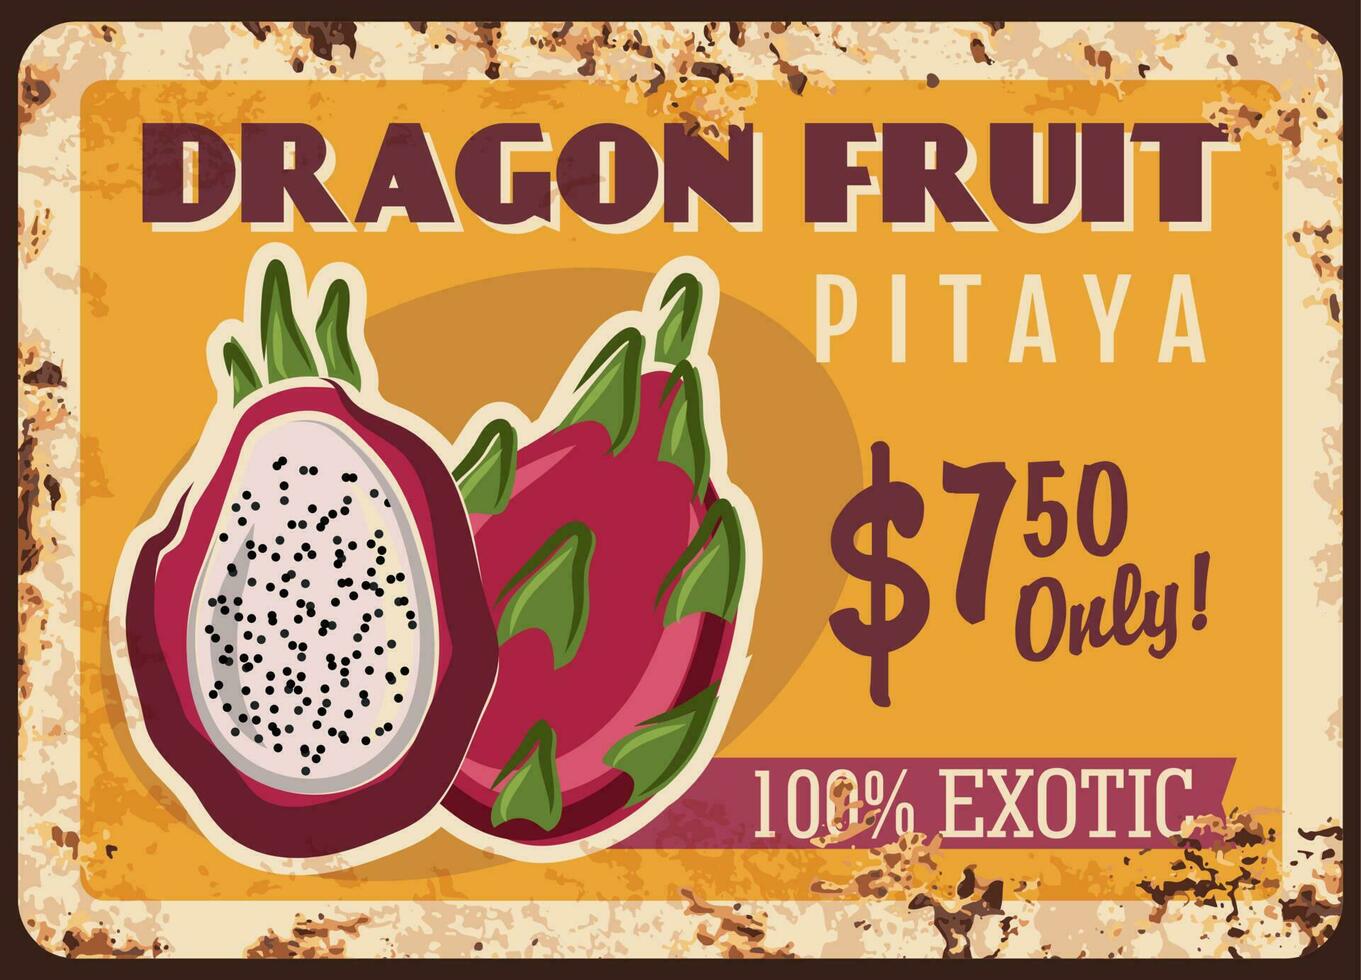 draak fruit pitaya roestig metaal bord met prijs vector